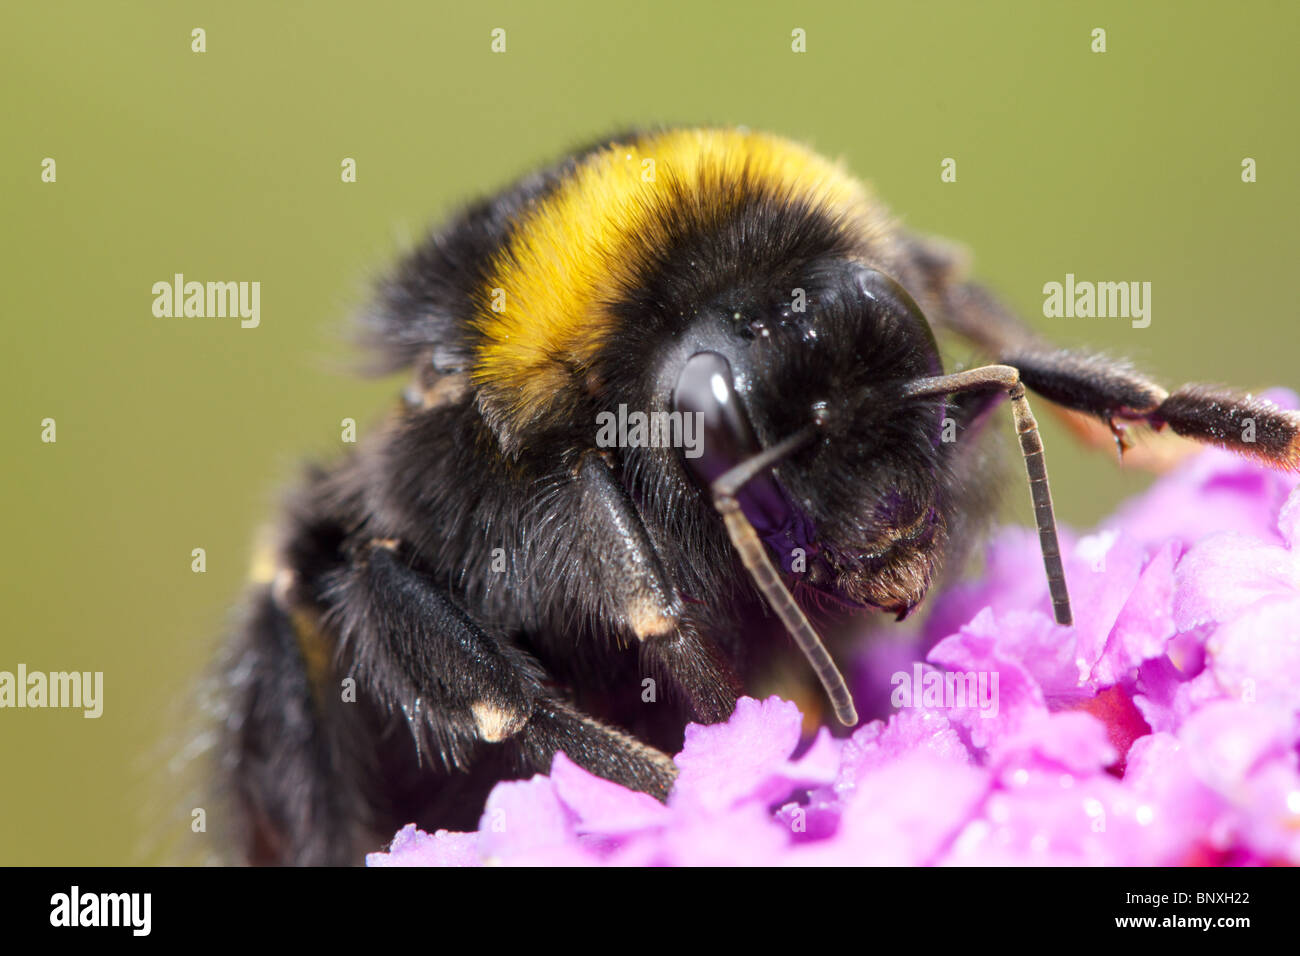 Bumblebee closeup Stock Photo